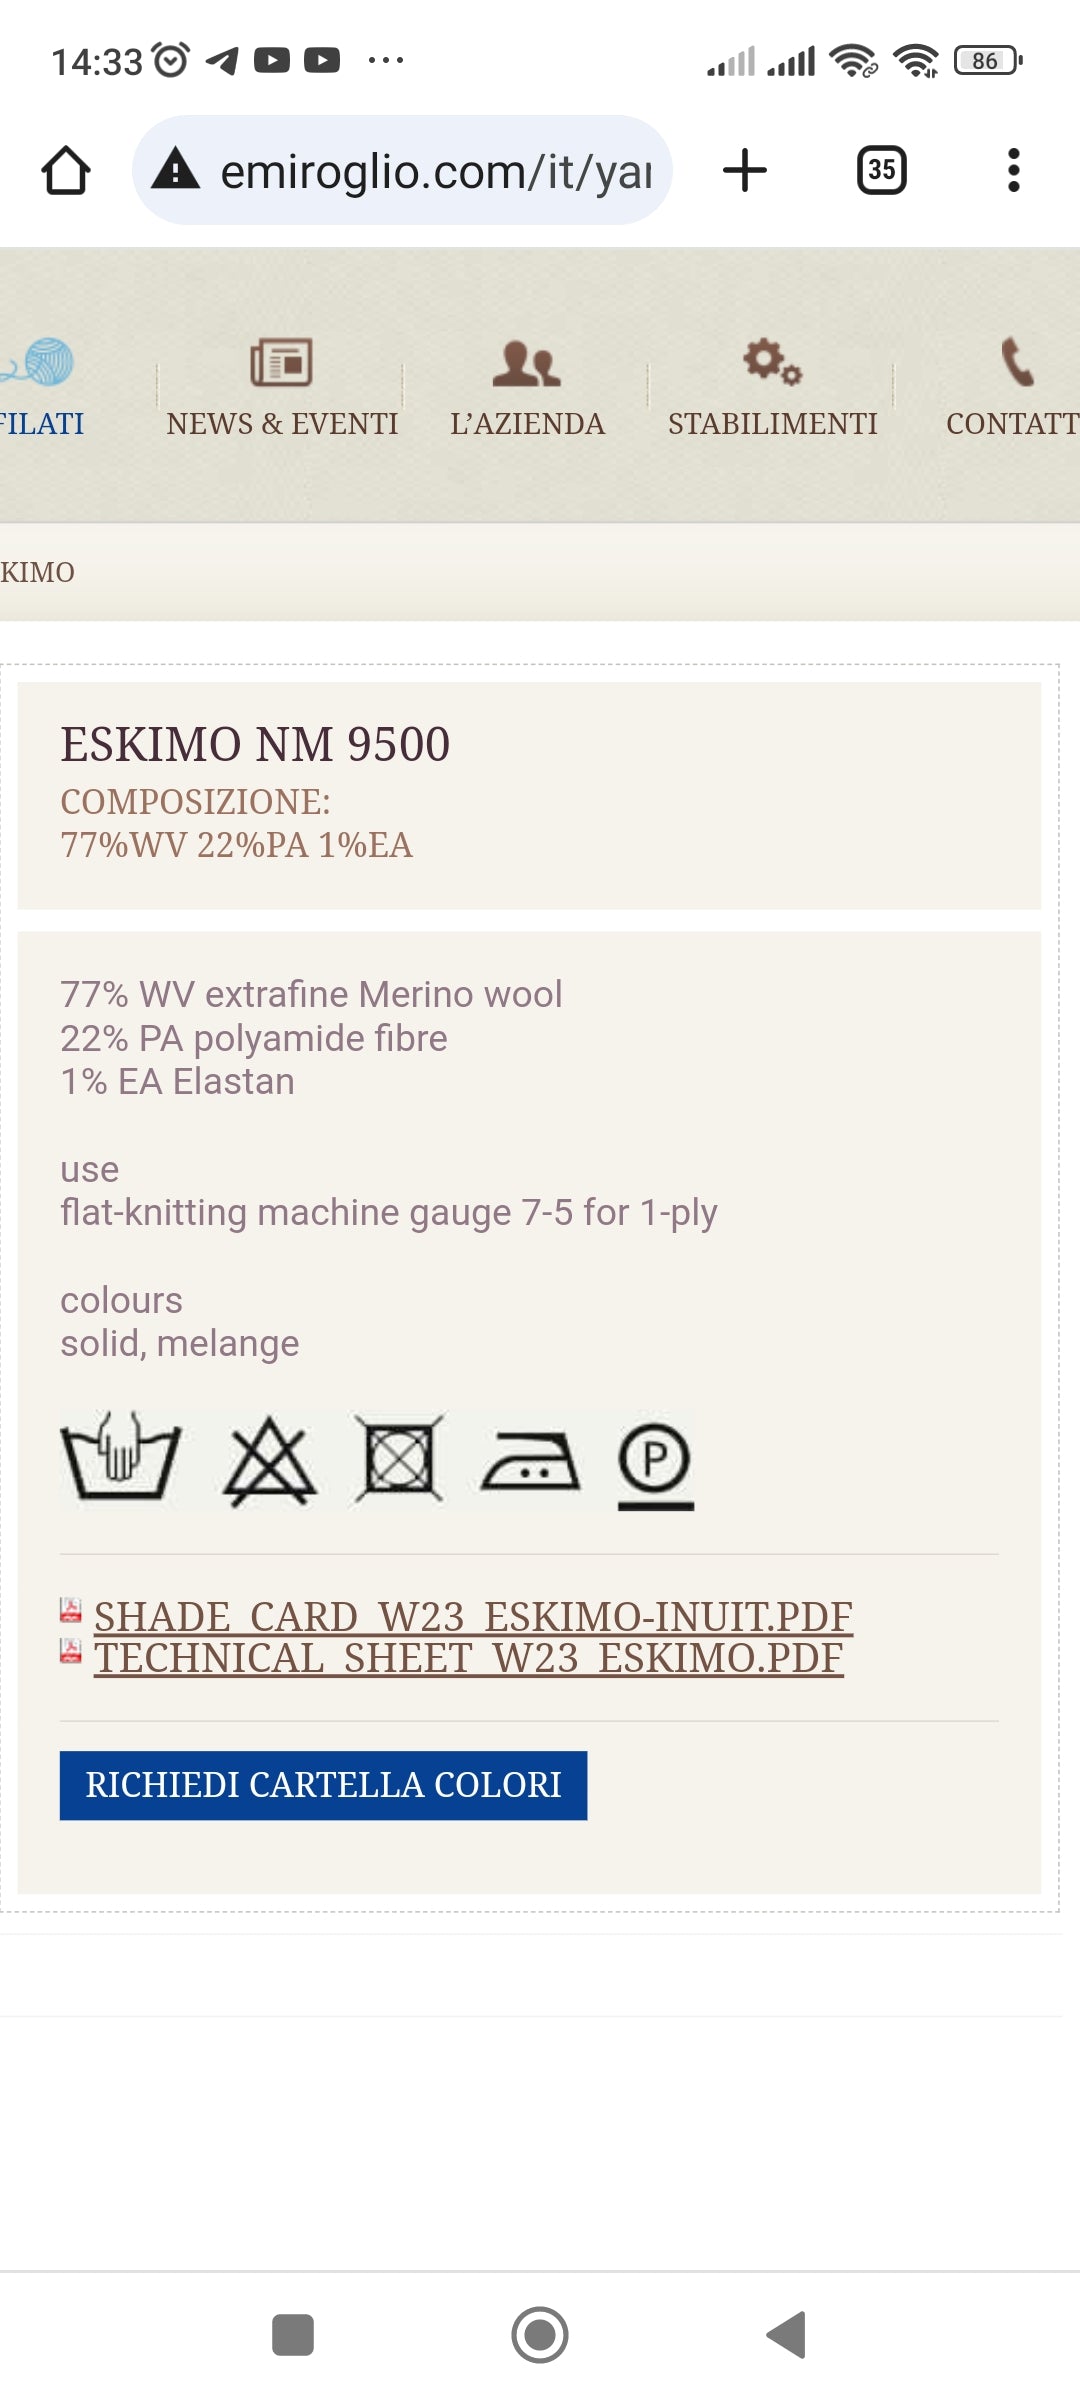 100g-200g Merino Extrafine Lana Bouclé con Elastan filato italiano per Maglieria colore Beige Cammello N.155